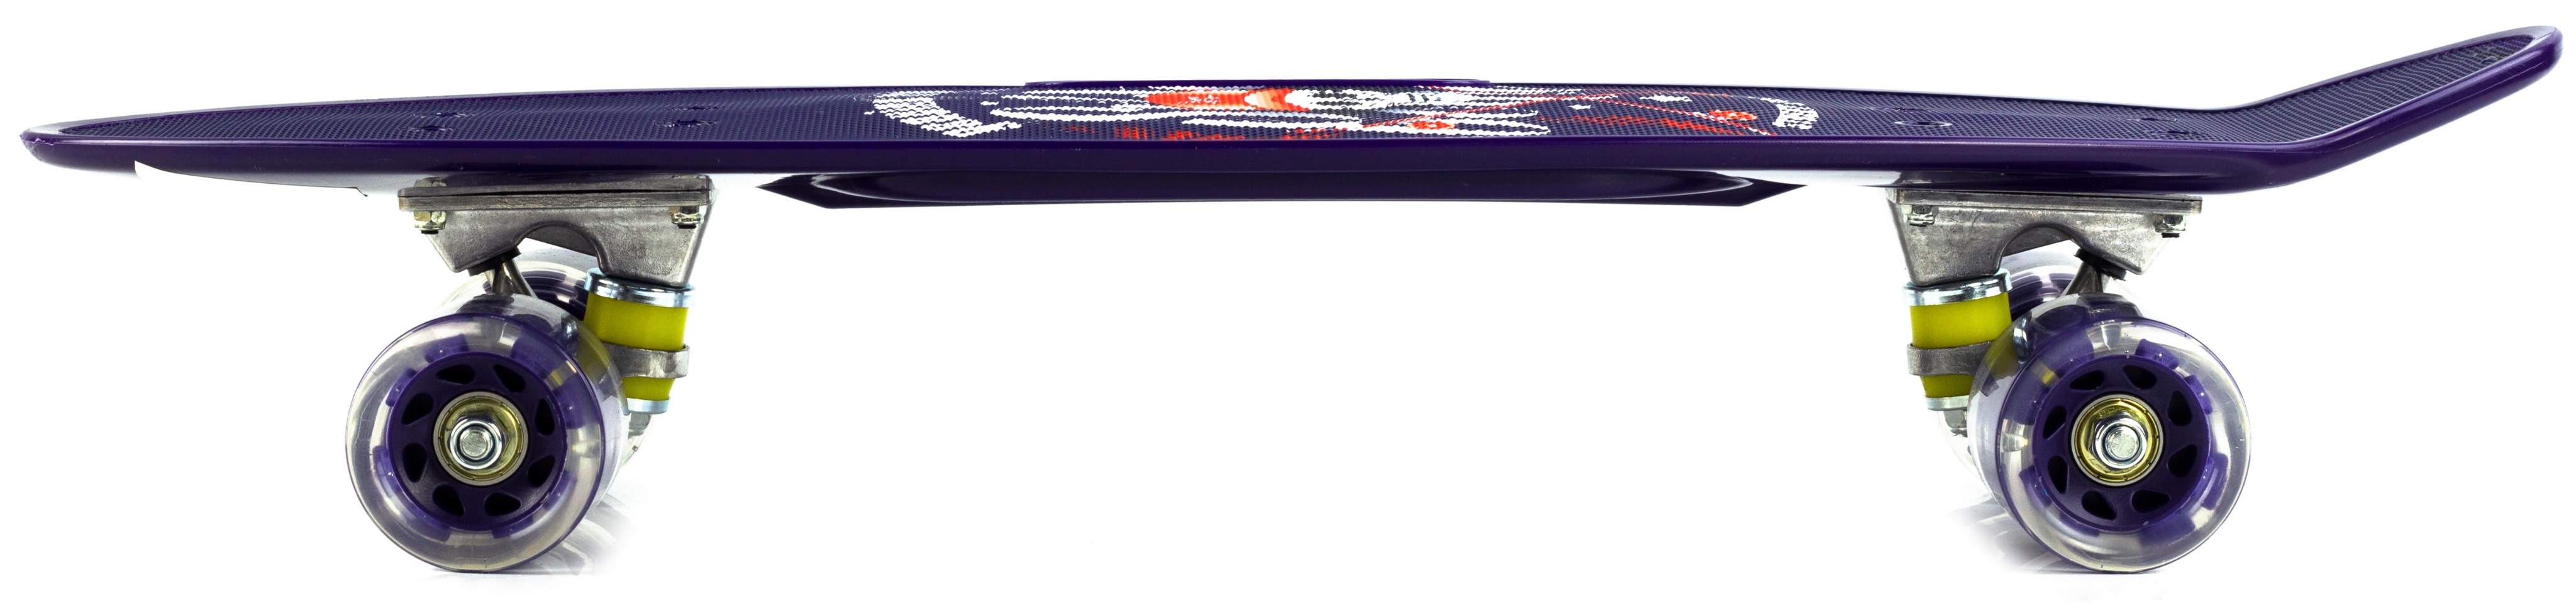 Пенни борд со светящимися колесами и ручкой для переноски, 55 см. S00165 / Микс